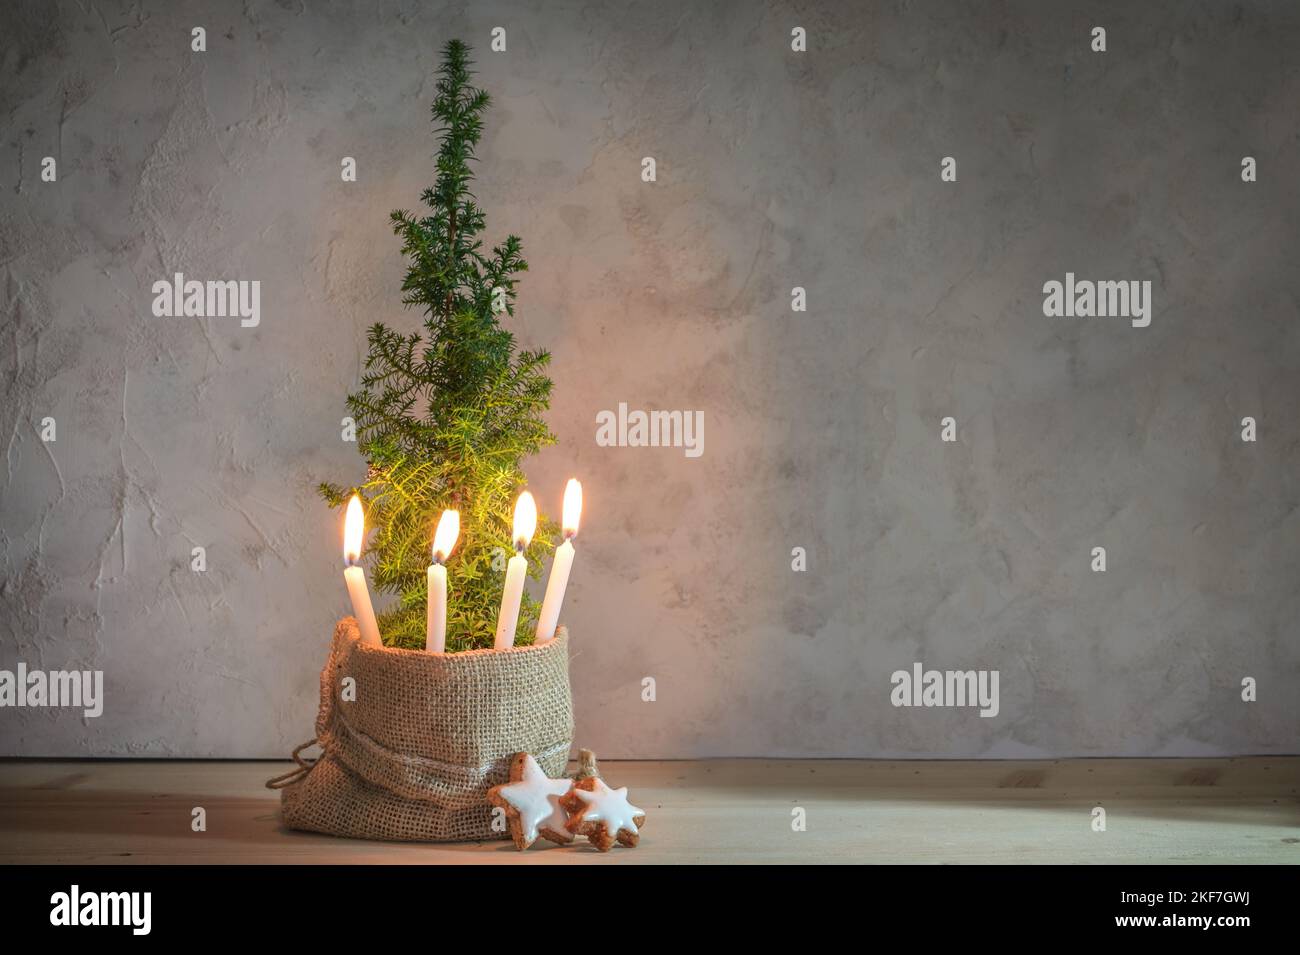 Corona d'Avvento alternativa, quattro candele accese con una fiamma su una piccola pianta di conifere come simbolo dell'albero di Natale, grande spazio di copia Foto Stock